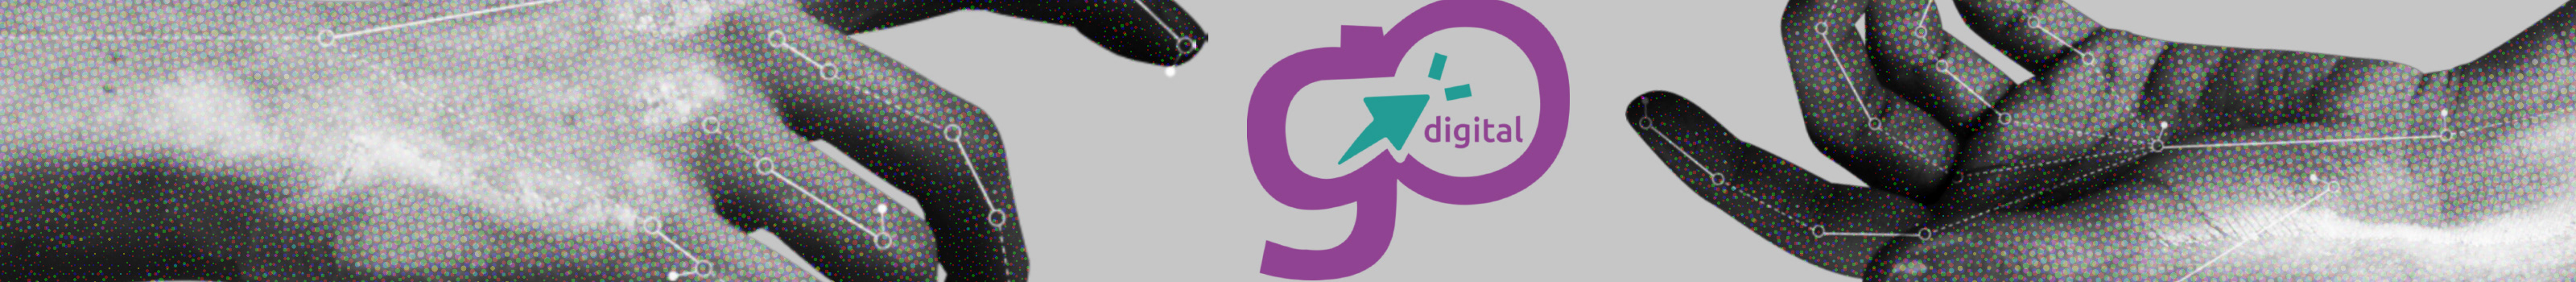 GOdigital srl's profile banner